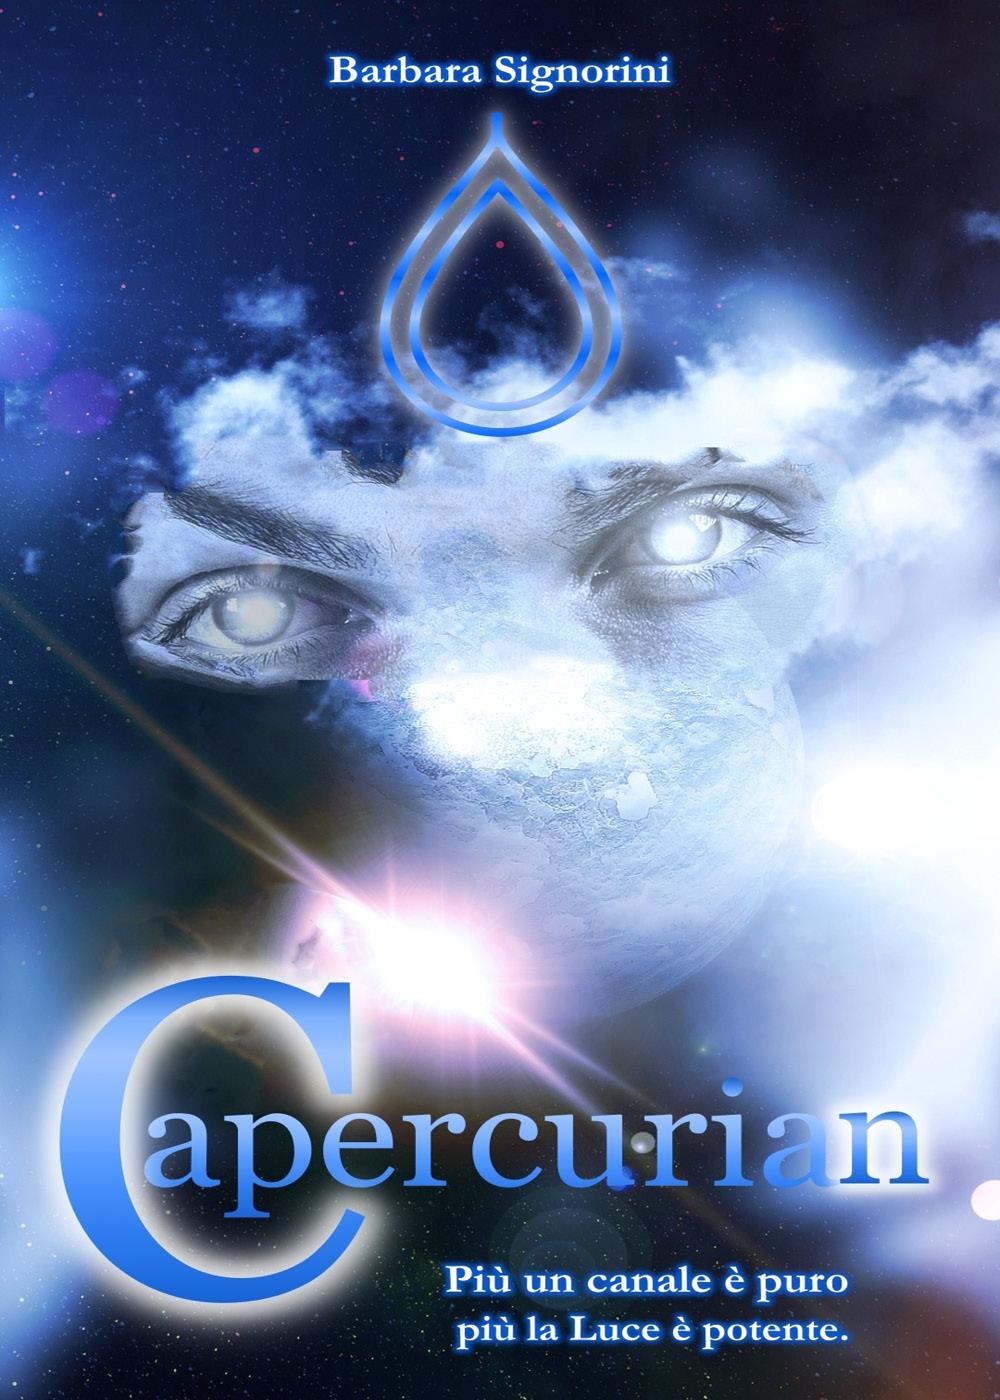 Capercurian